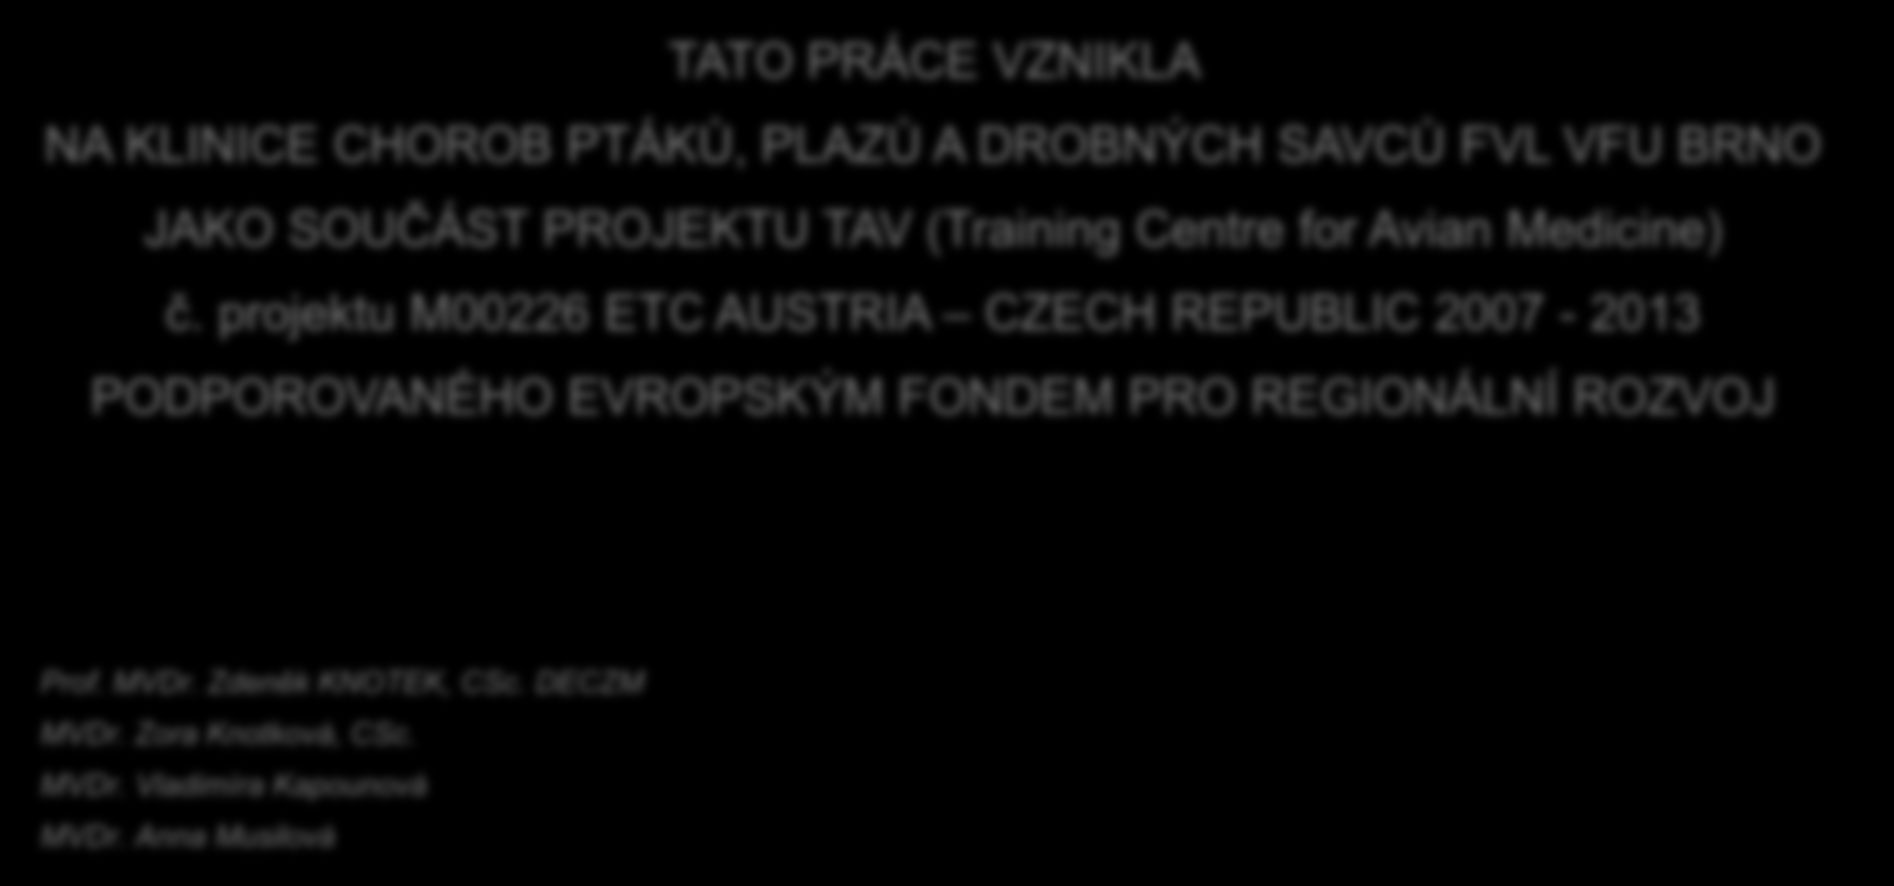 projektu M00226 ETC AUSTRIA CZECH REPUBLIC 2007-2013 PODPOROVANÉHO EVROPSKÝM FONDEM PRO